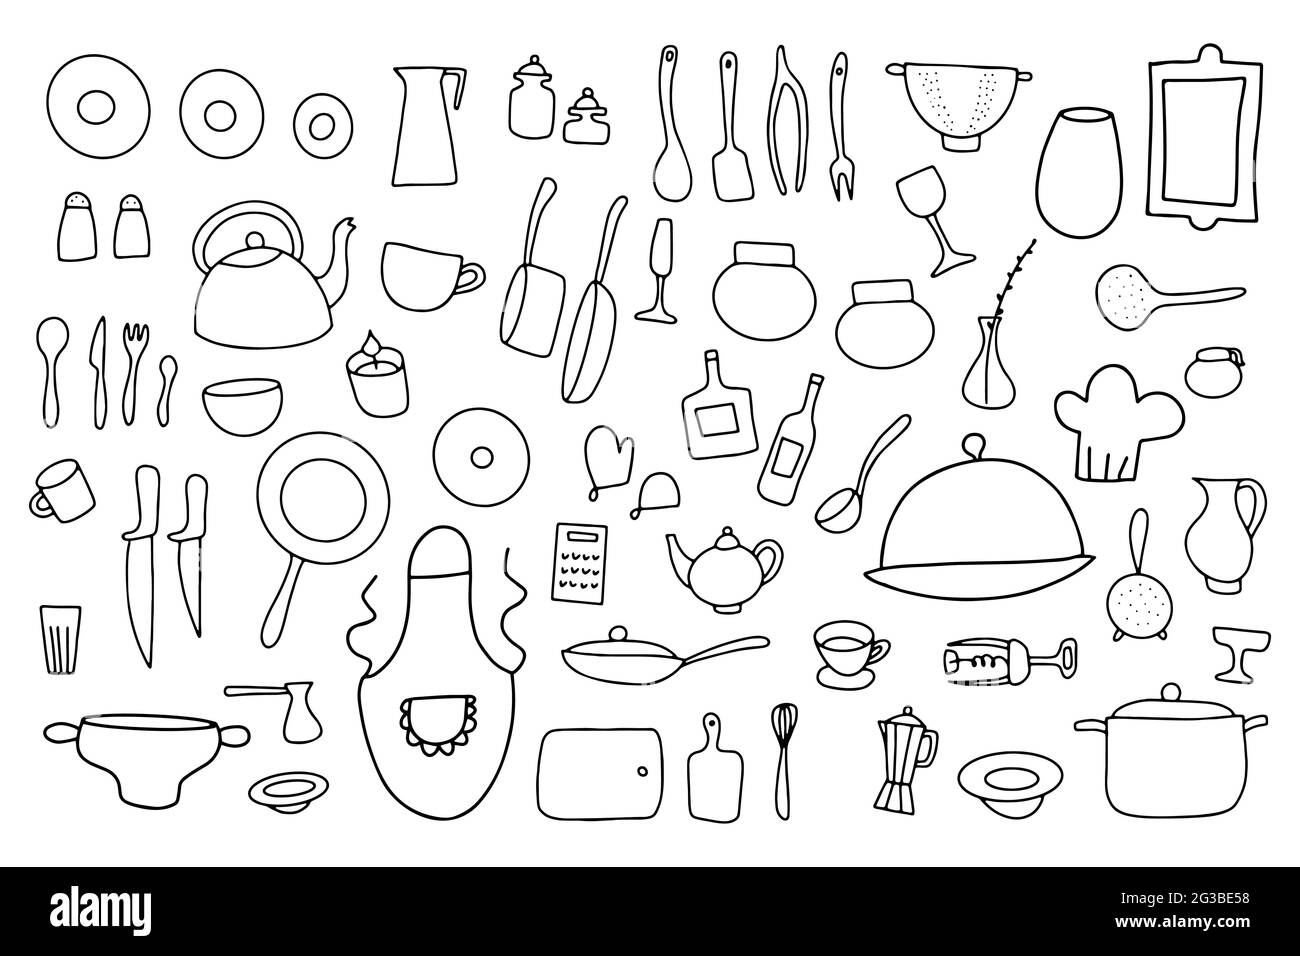 Doodle Geschirr Vektor-Set. Cartoon skizzieren Küchengeschirr isoliert auf weißem Hintergrund. Kochtöpfe, Pfannen, Teller, Besteck, Wasserkocher, Kaffee Stock Vektor